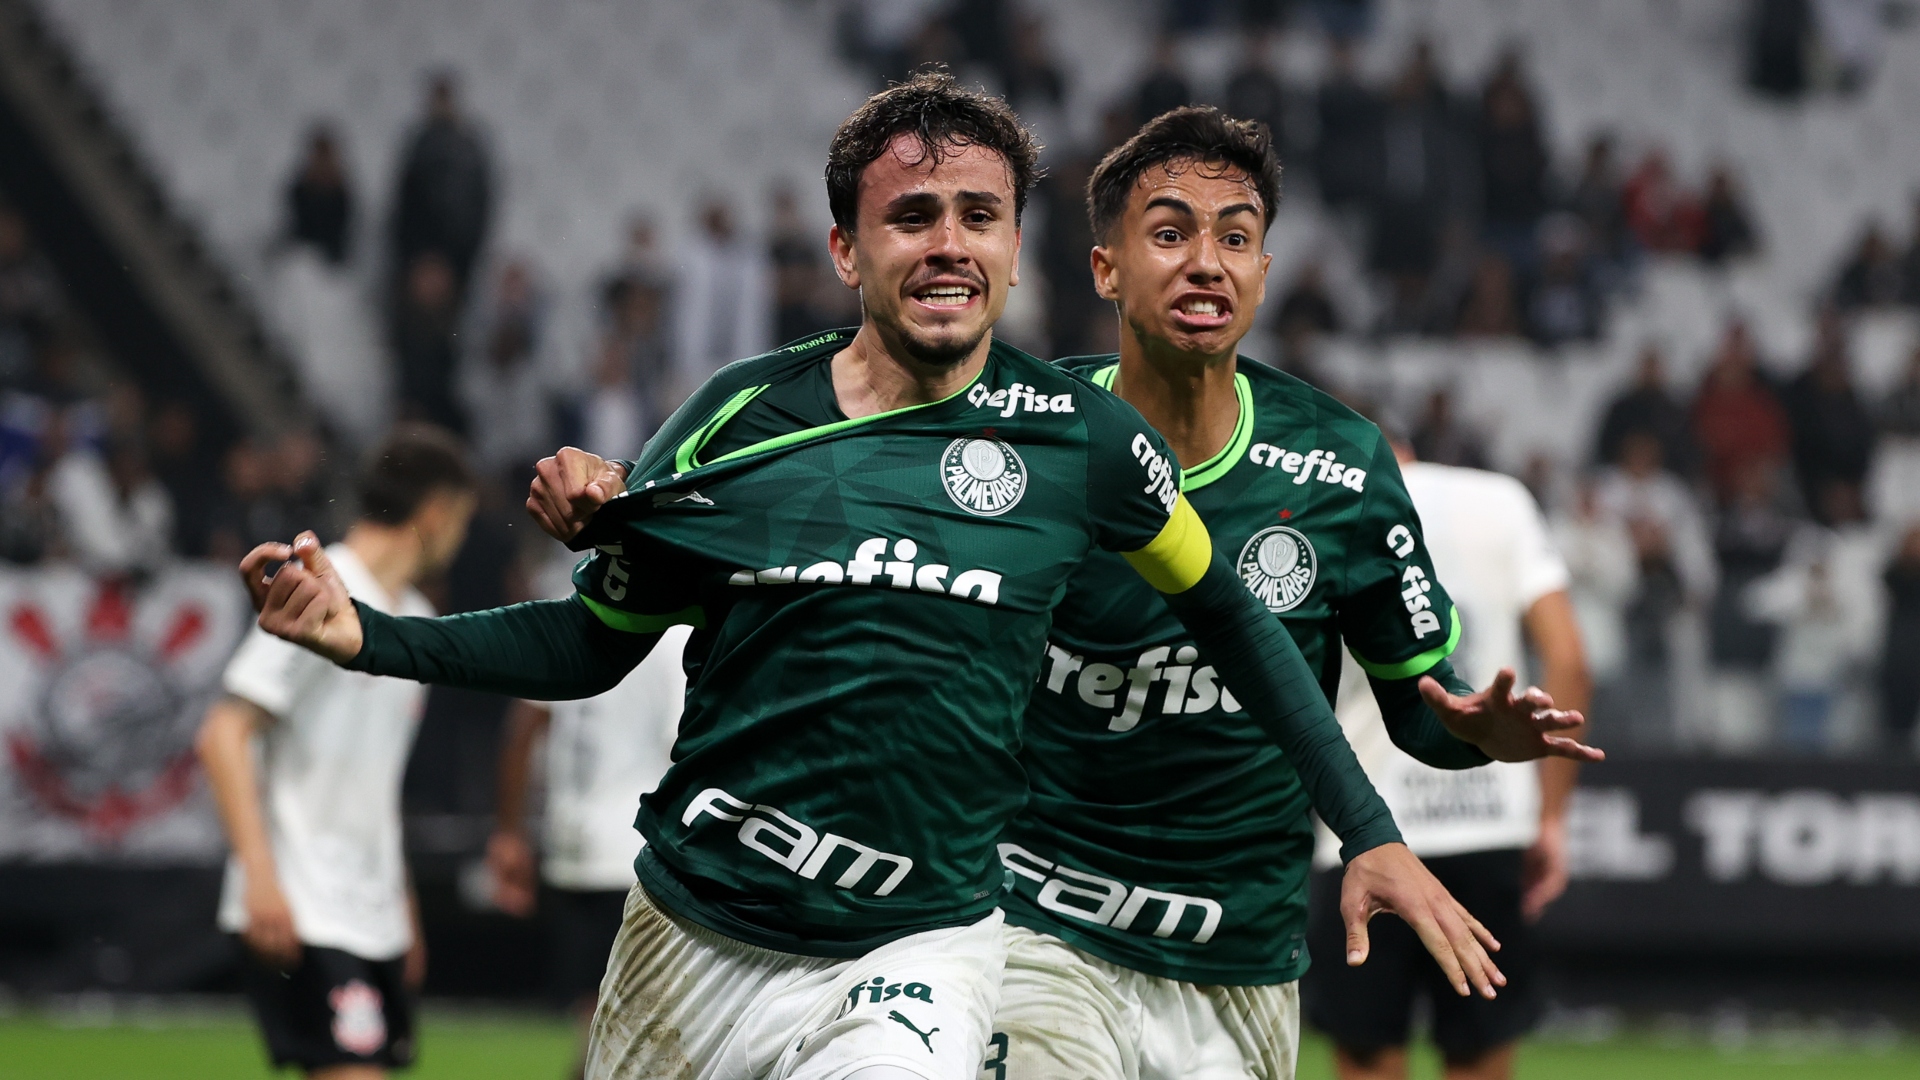 No Brasileiro, Palmeiras é mais 'inglês' do que todo futebol inglês - ESPN